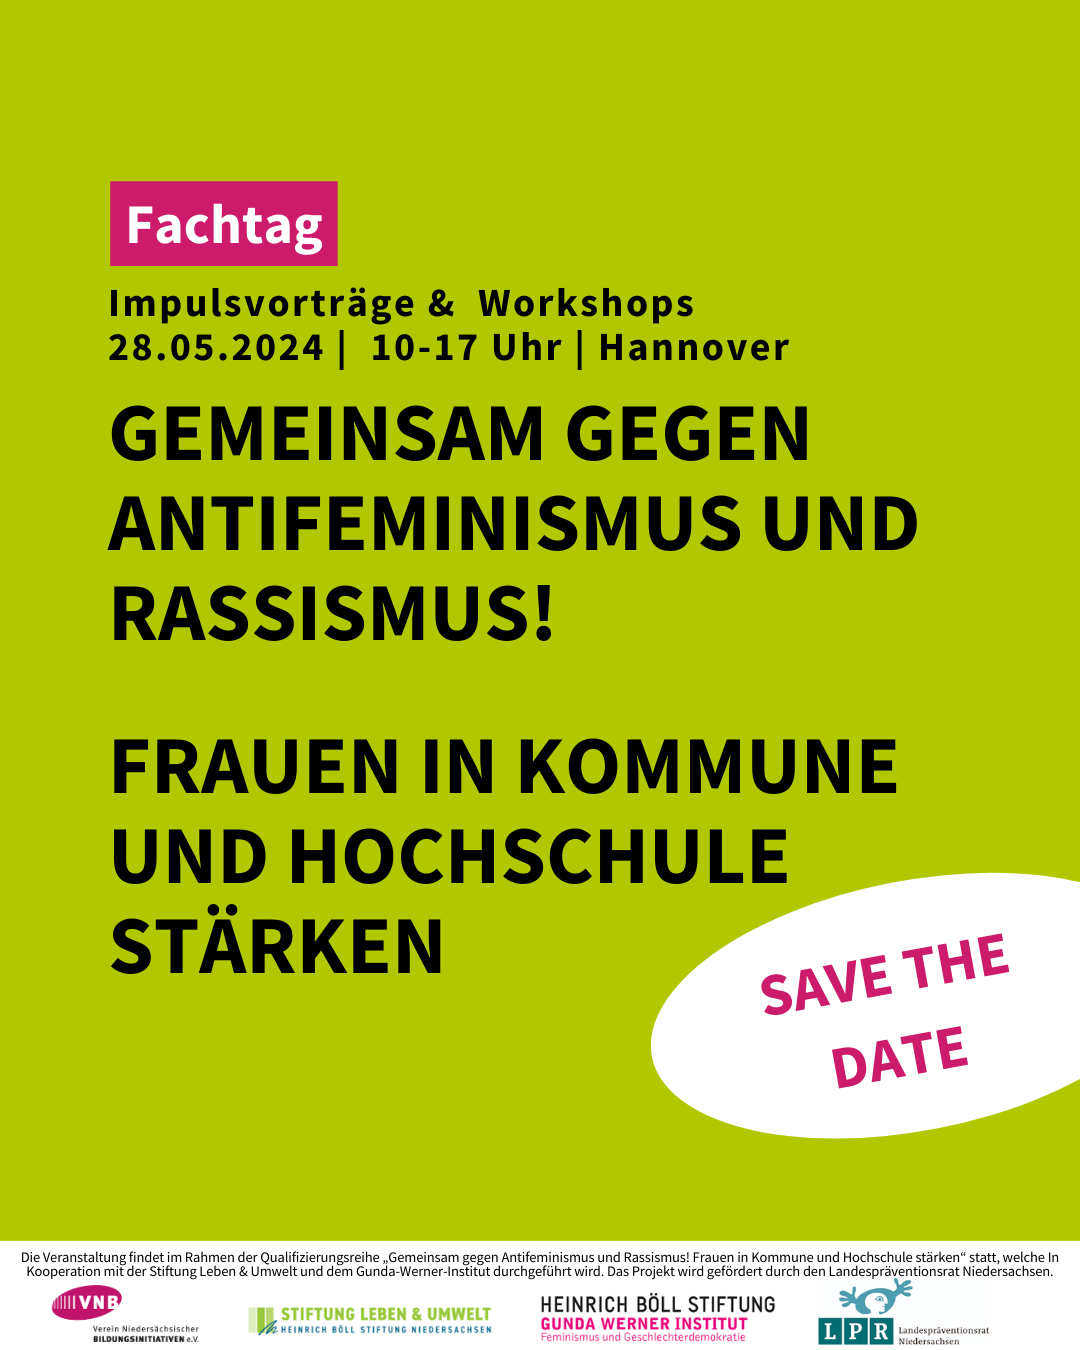 Save the Date | Fachtag | Gemeinsam gegen Antifeminismus und Rassismus! Frauen in Kommune und Hochschule stärken